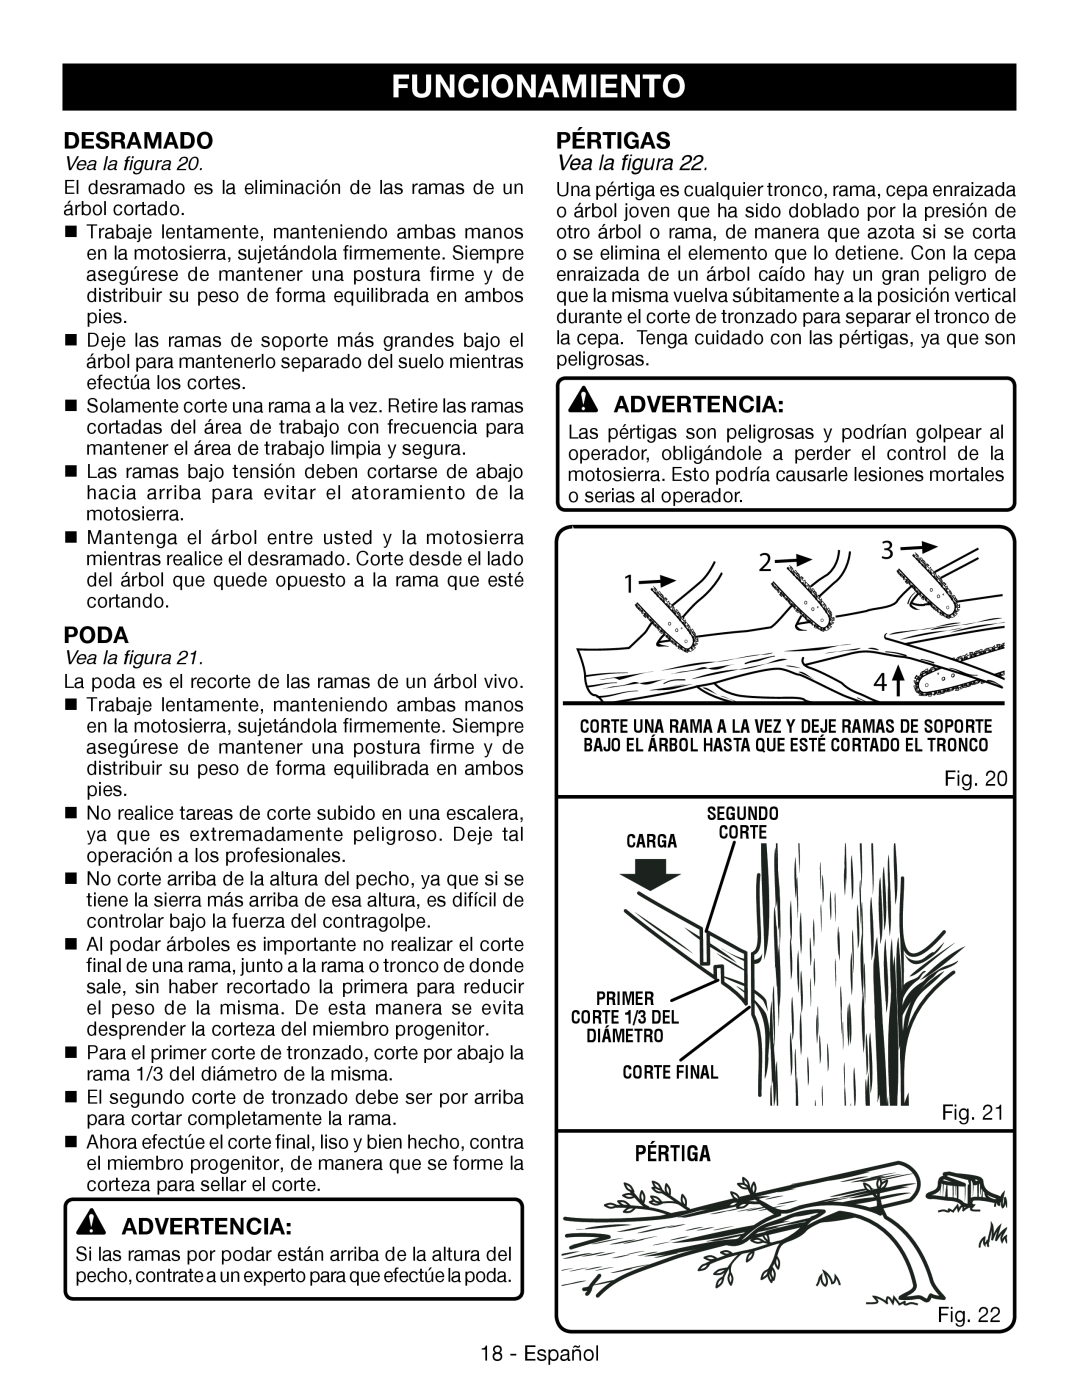 Ryobi P545 manuel dutilisation Desramado, Pértigas, Poda, Funcionamiento, Advertencia, Vea la figura 